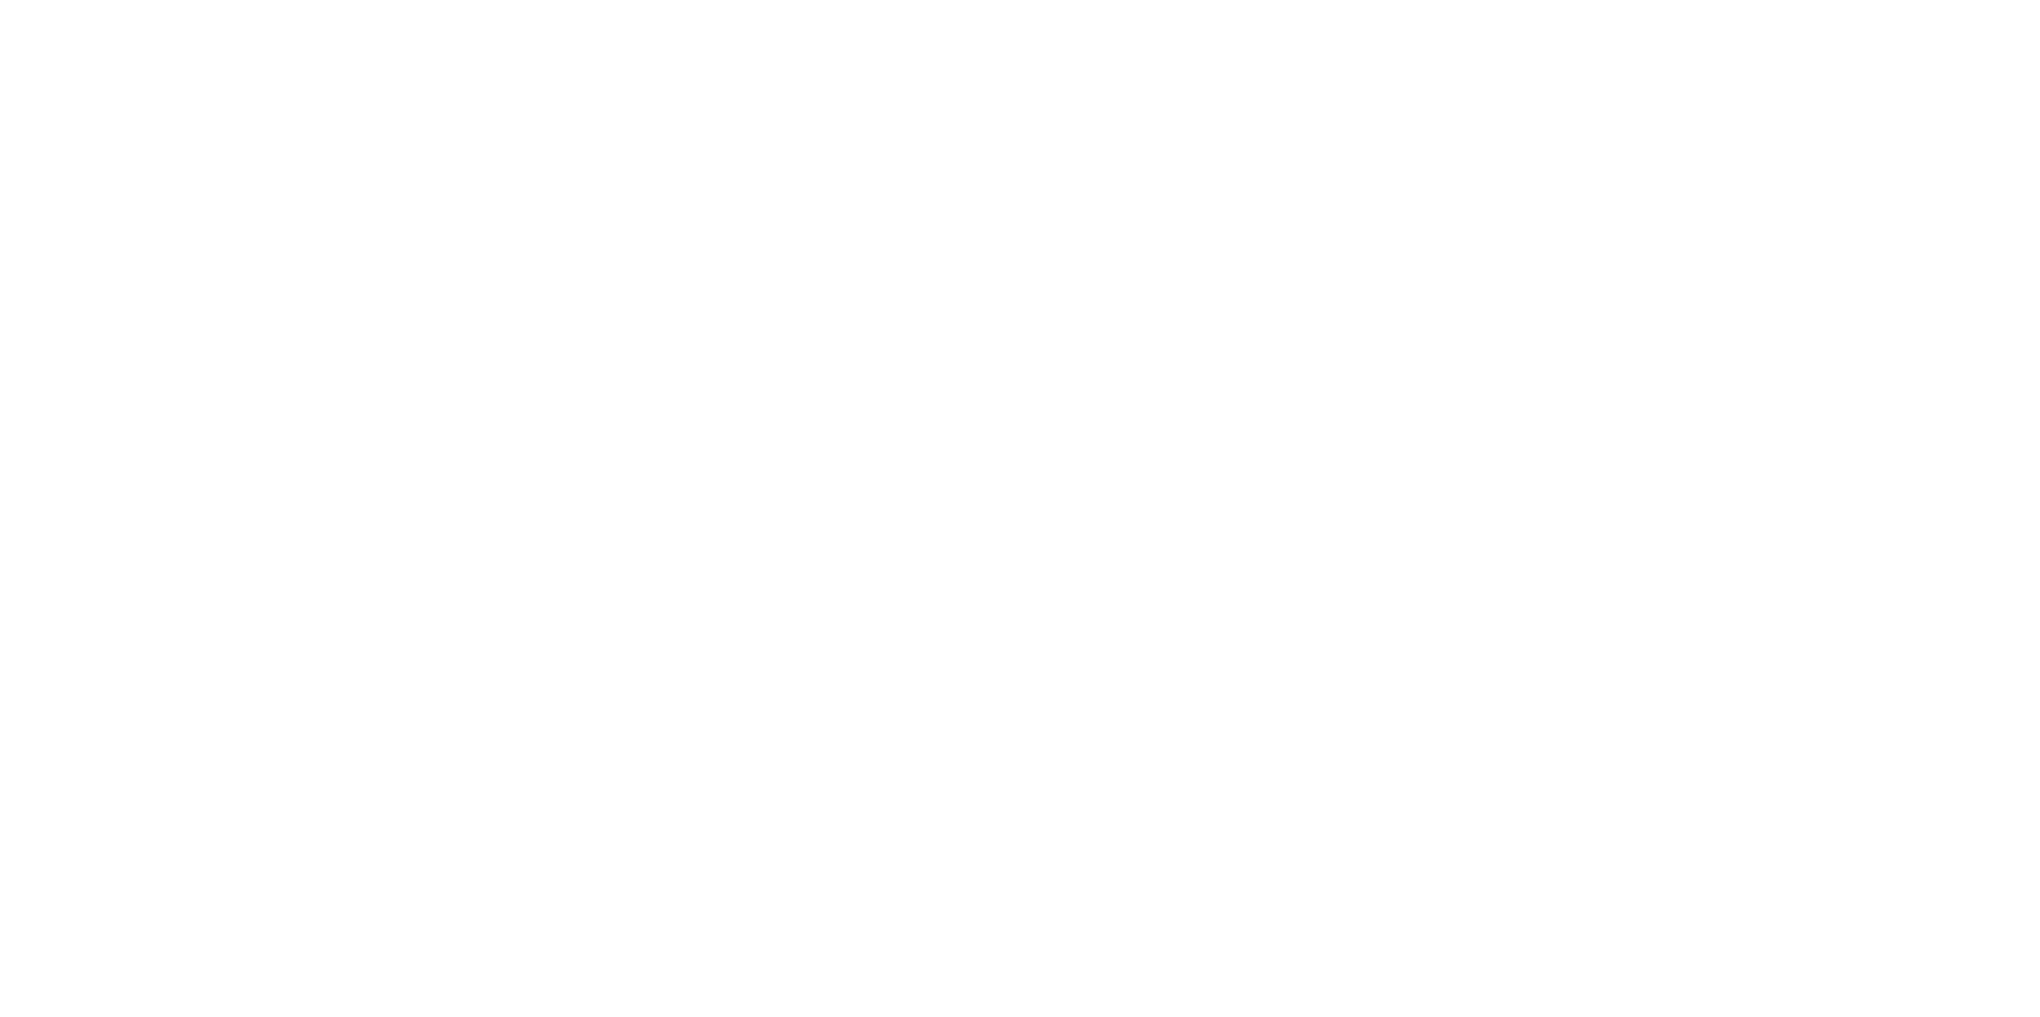 Greater Irvine Chamber of Commerce